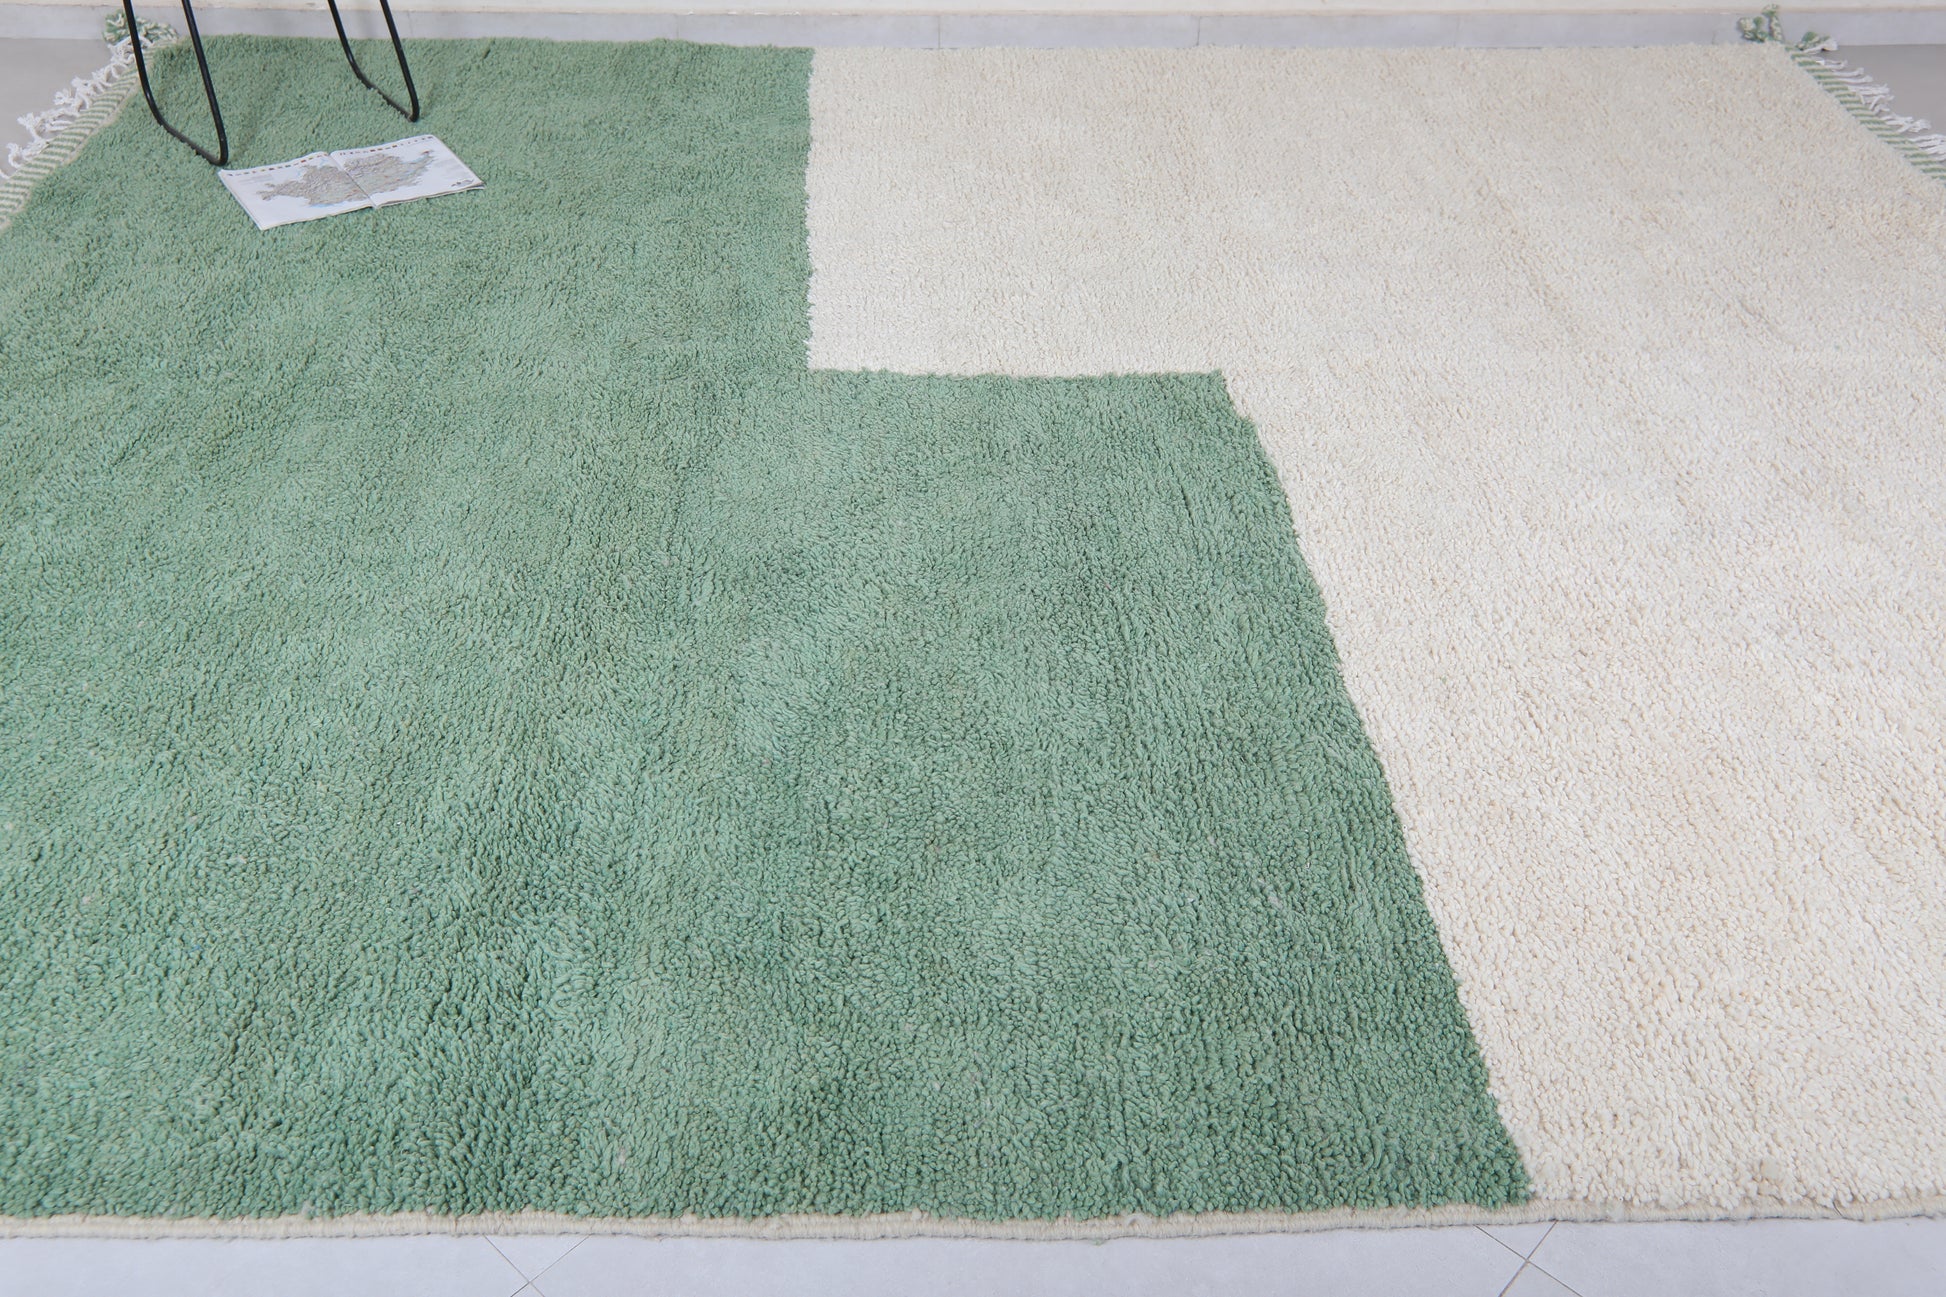 Moroccan green - Berber rug - Contemporary green rug